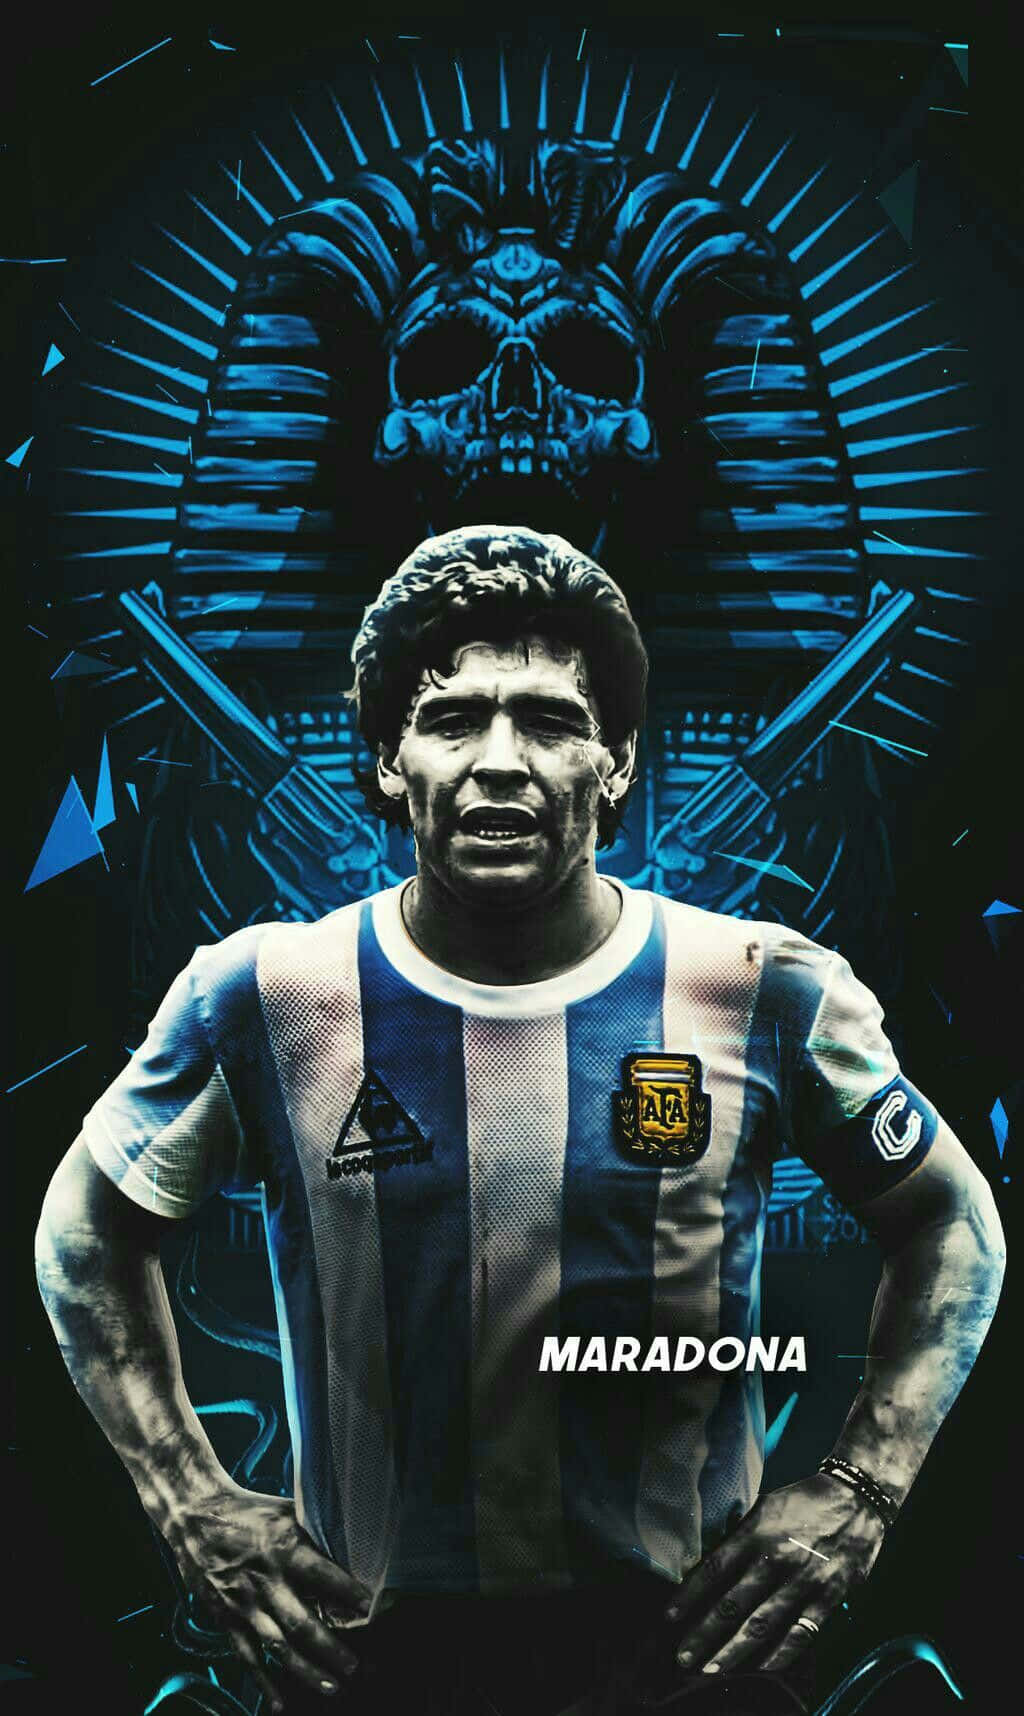 MARADONA WALLPAPER  Diego maradona Fotos de boca Fotografía de fútbol